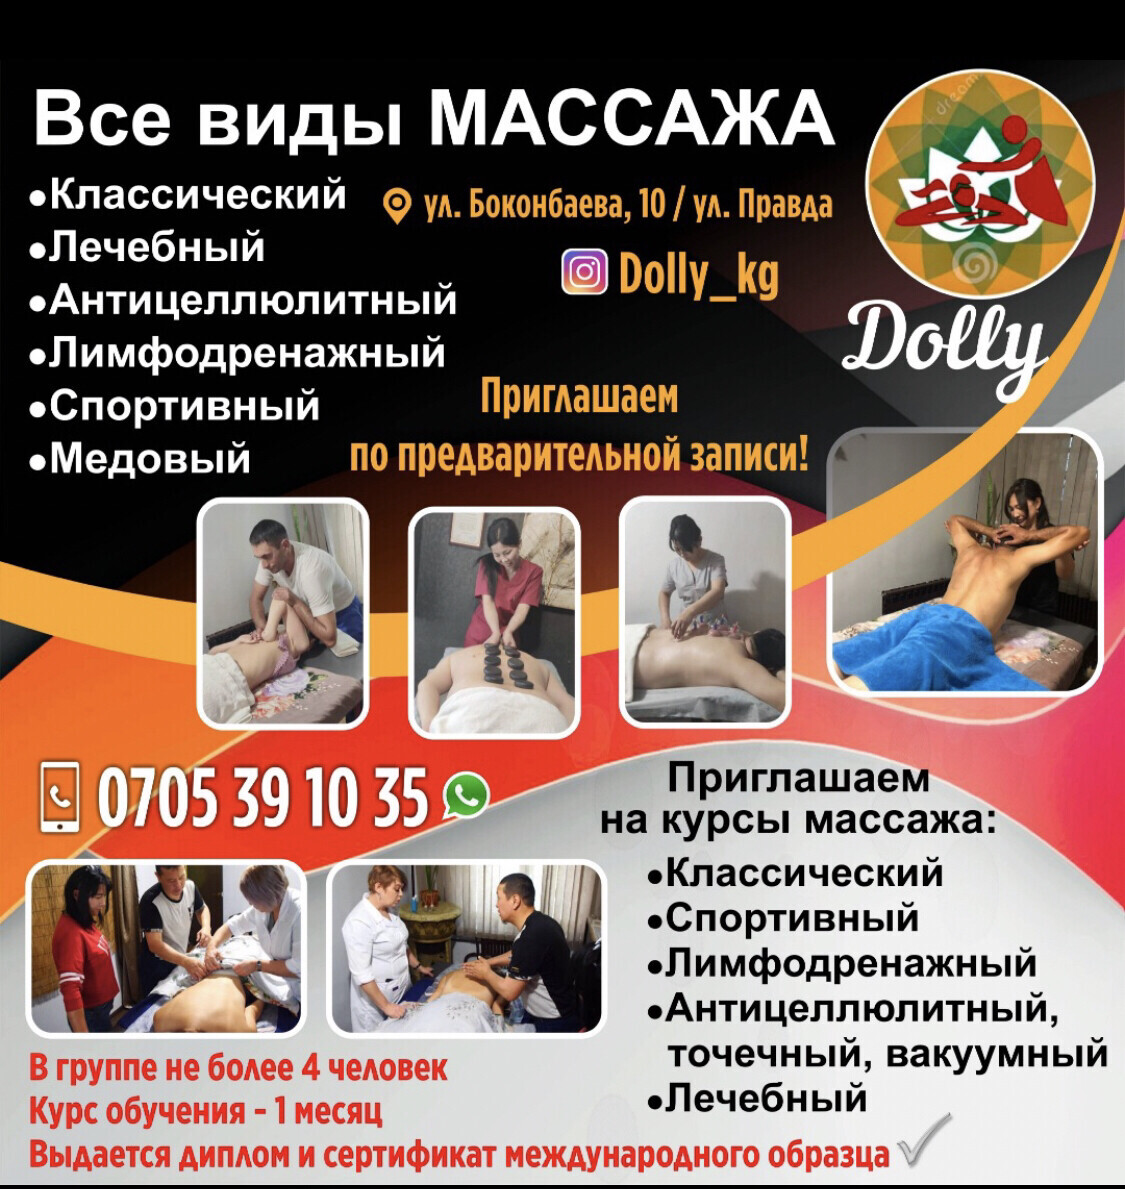 Массажный центр Dolly - Бизнес-профиль компании на lalafo.kg | Кыргызстан